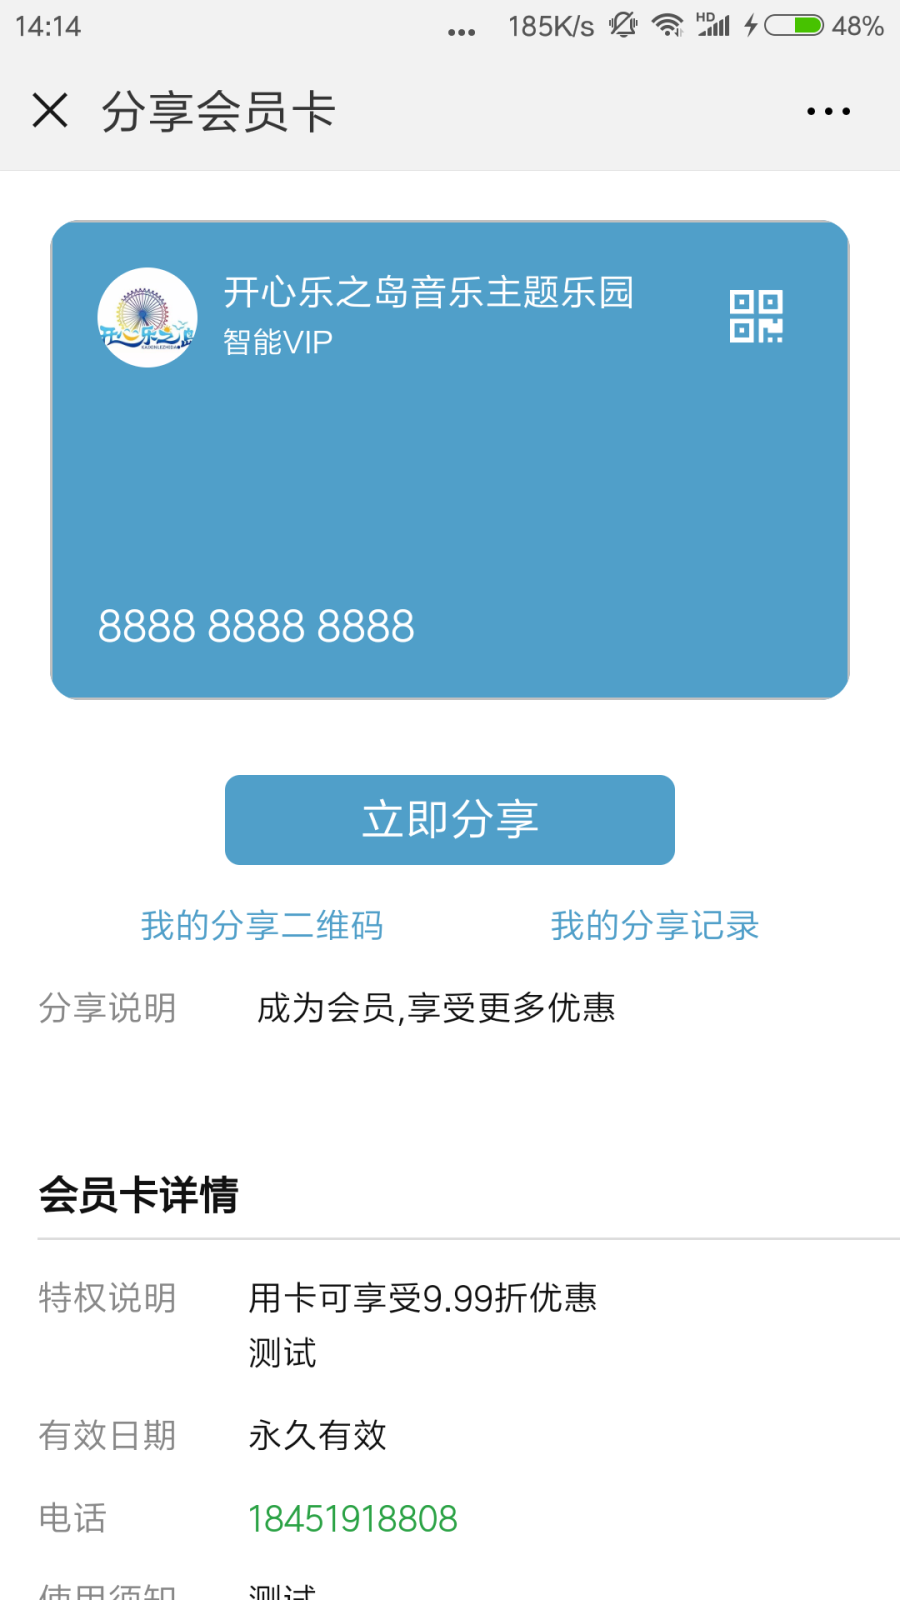 Screenshot_2018-08-27-14-14-42-707_com.tencent.mm.png